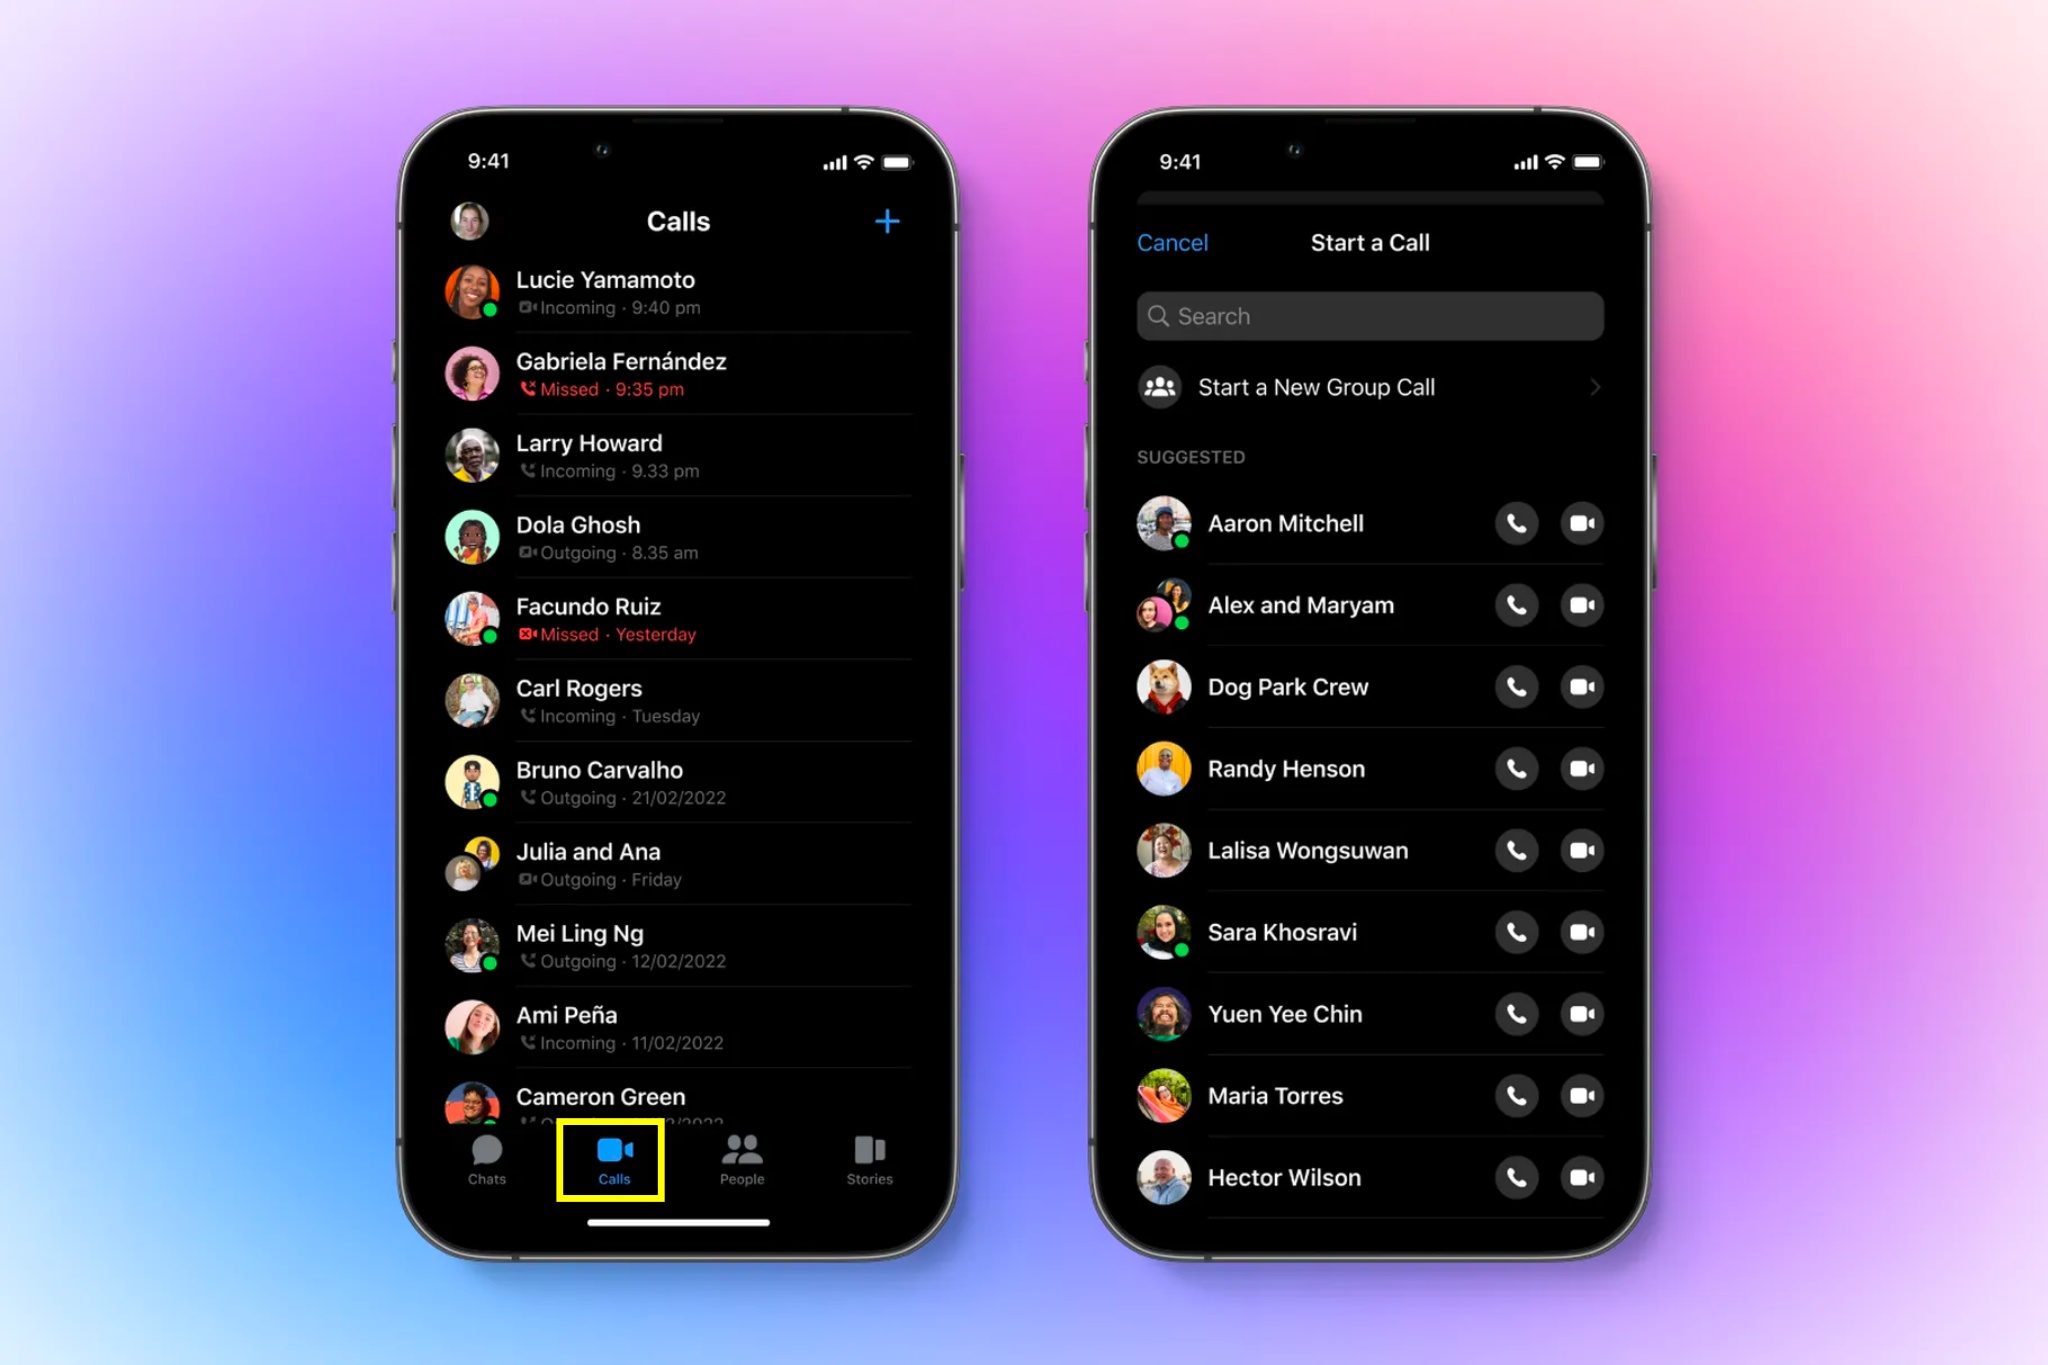 Bản cập nhật mới của ứng dụng Messenger có thêm nút "Calls" trực tiếp ở giao diện chính